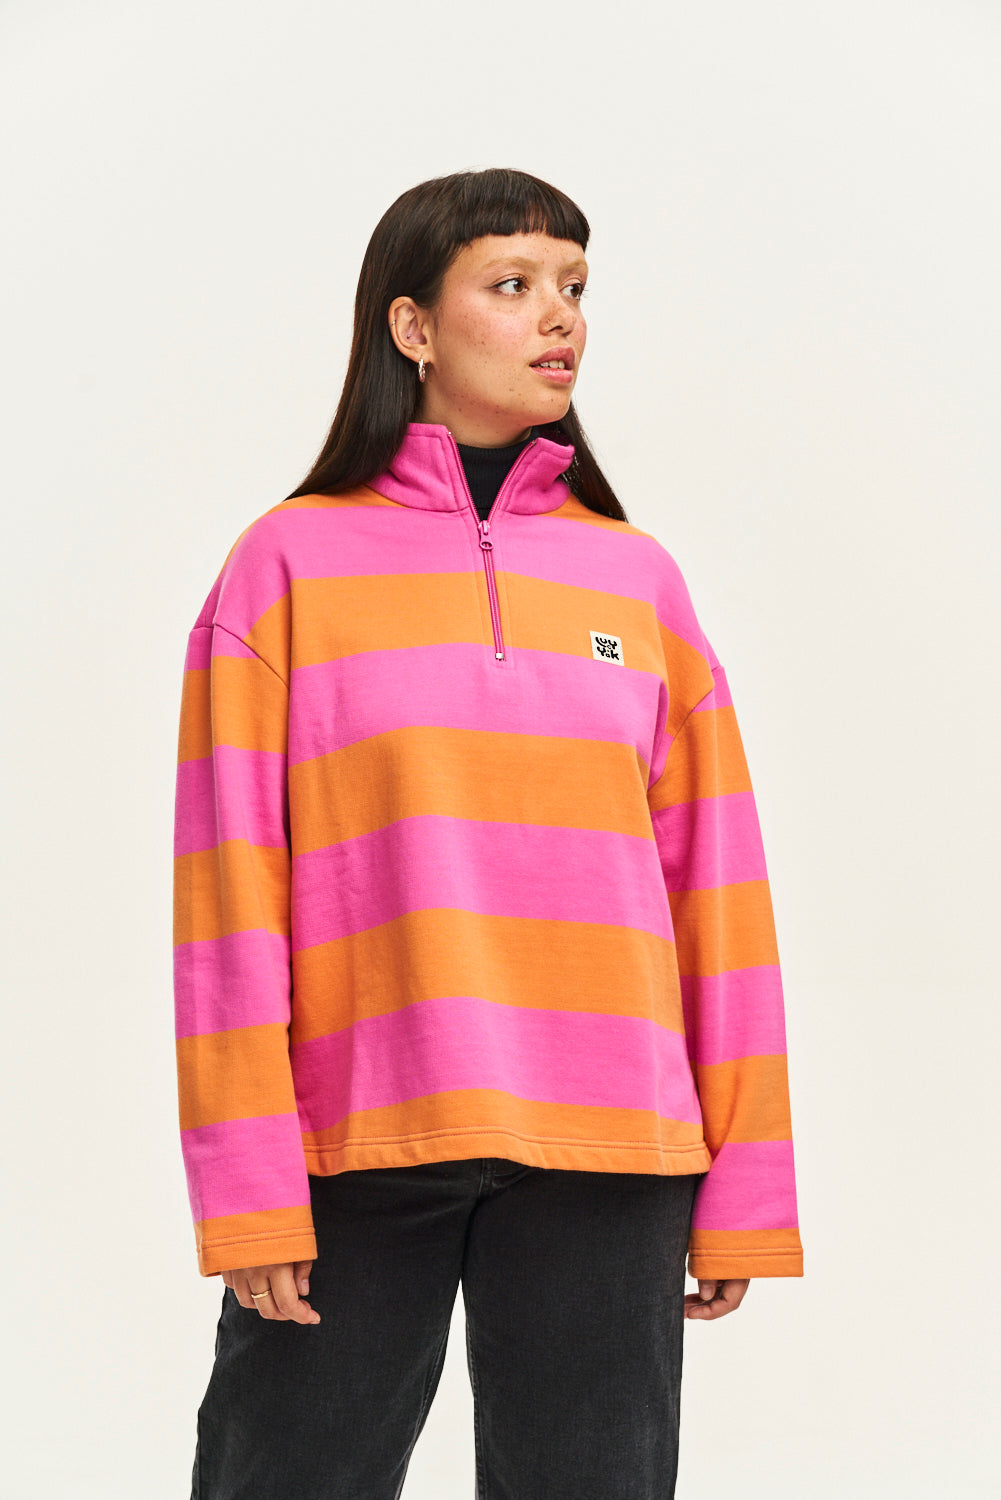 Taylor Sweater: ORGANIC COTTON - Pink & Orange Stripe